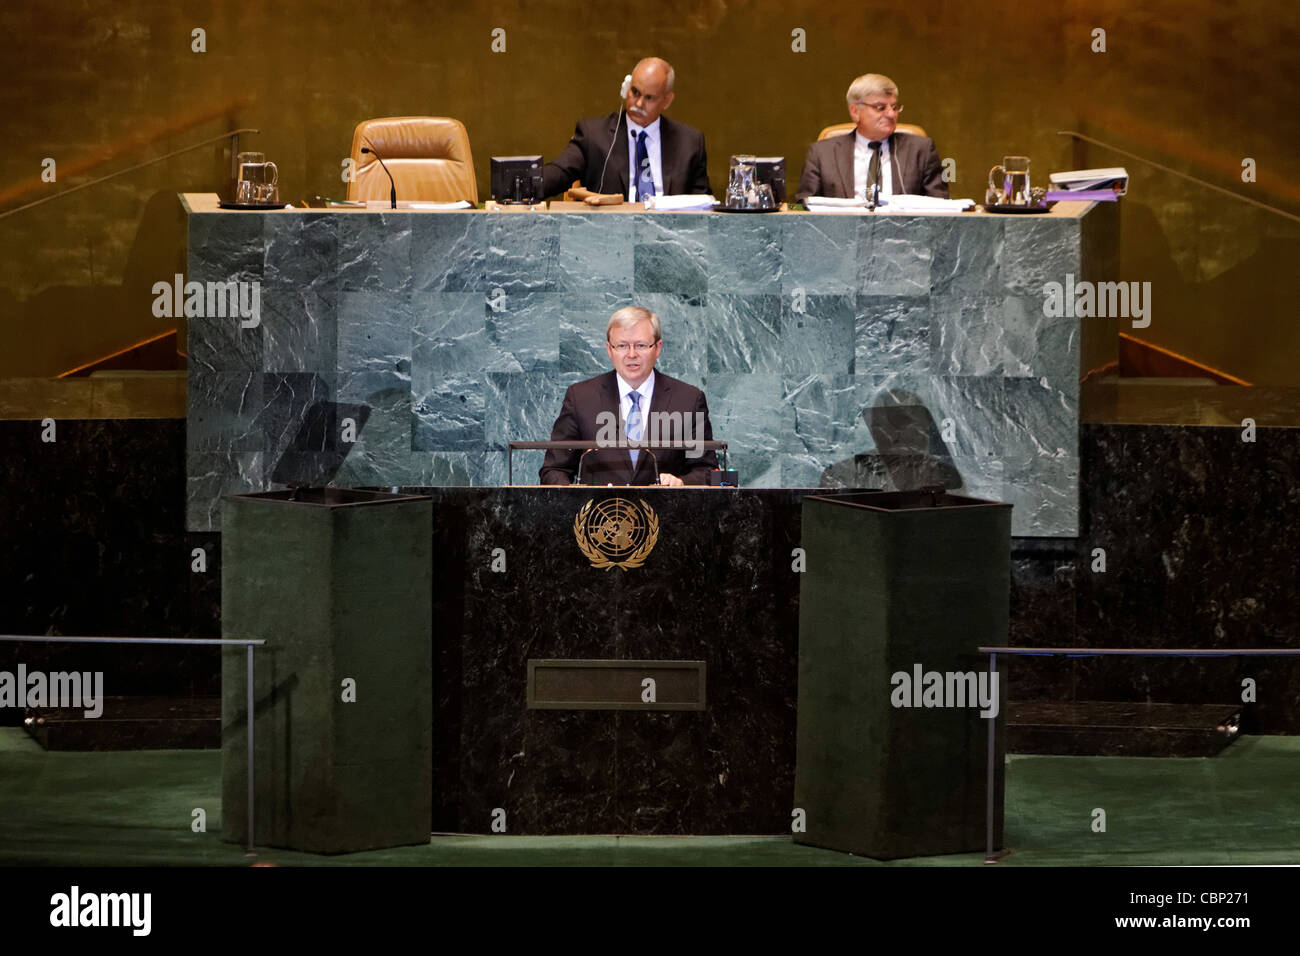 El Ministro australiano de Relaciones Exteriores y ex Primer Ministro Kevin Rudd hace un discurso durante la Asamblea General de las Naciones Unidas 2010 Foto de stock